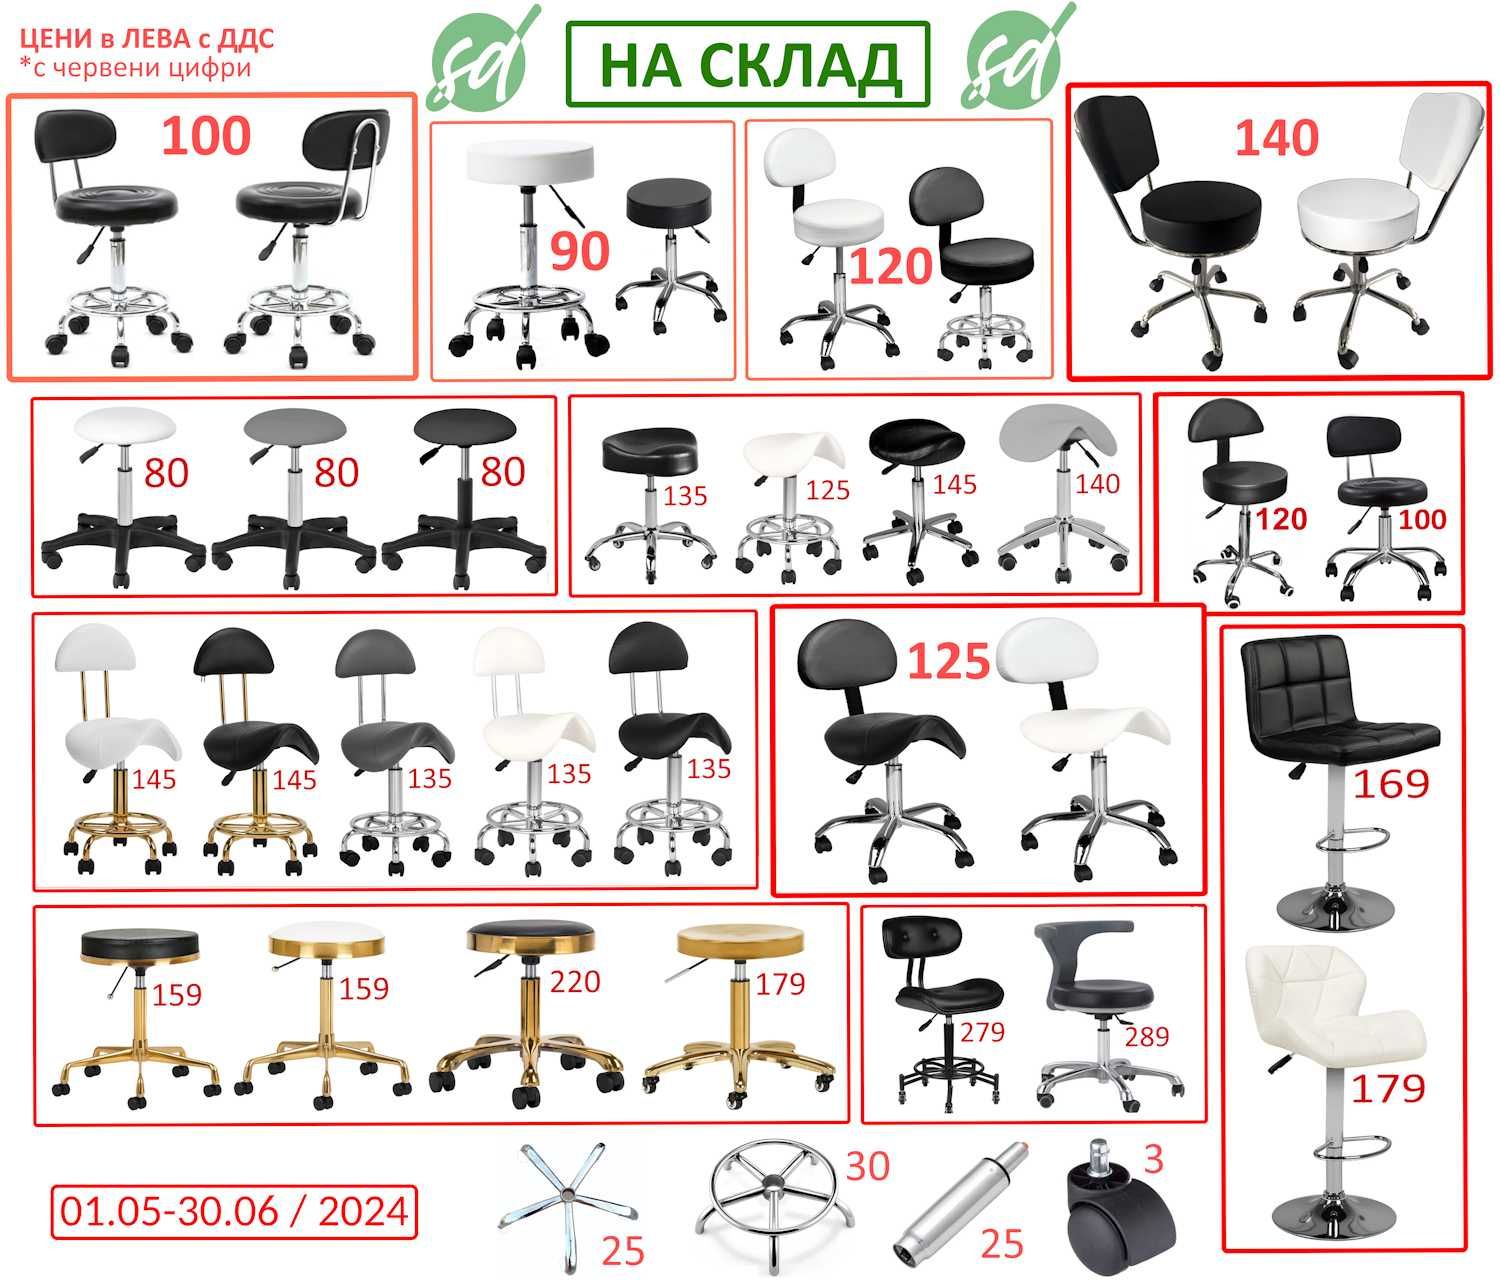 Бръснарски столове от 540 до 1580лв и фризьорска мивка 690